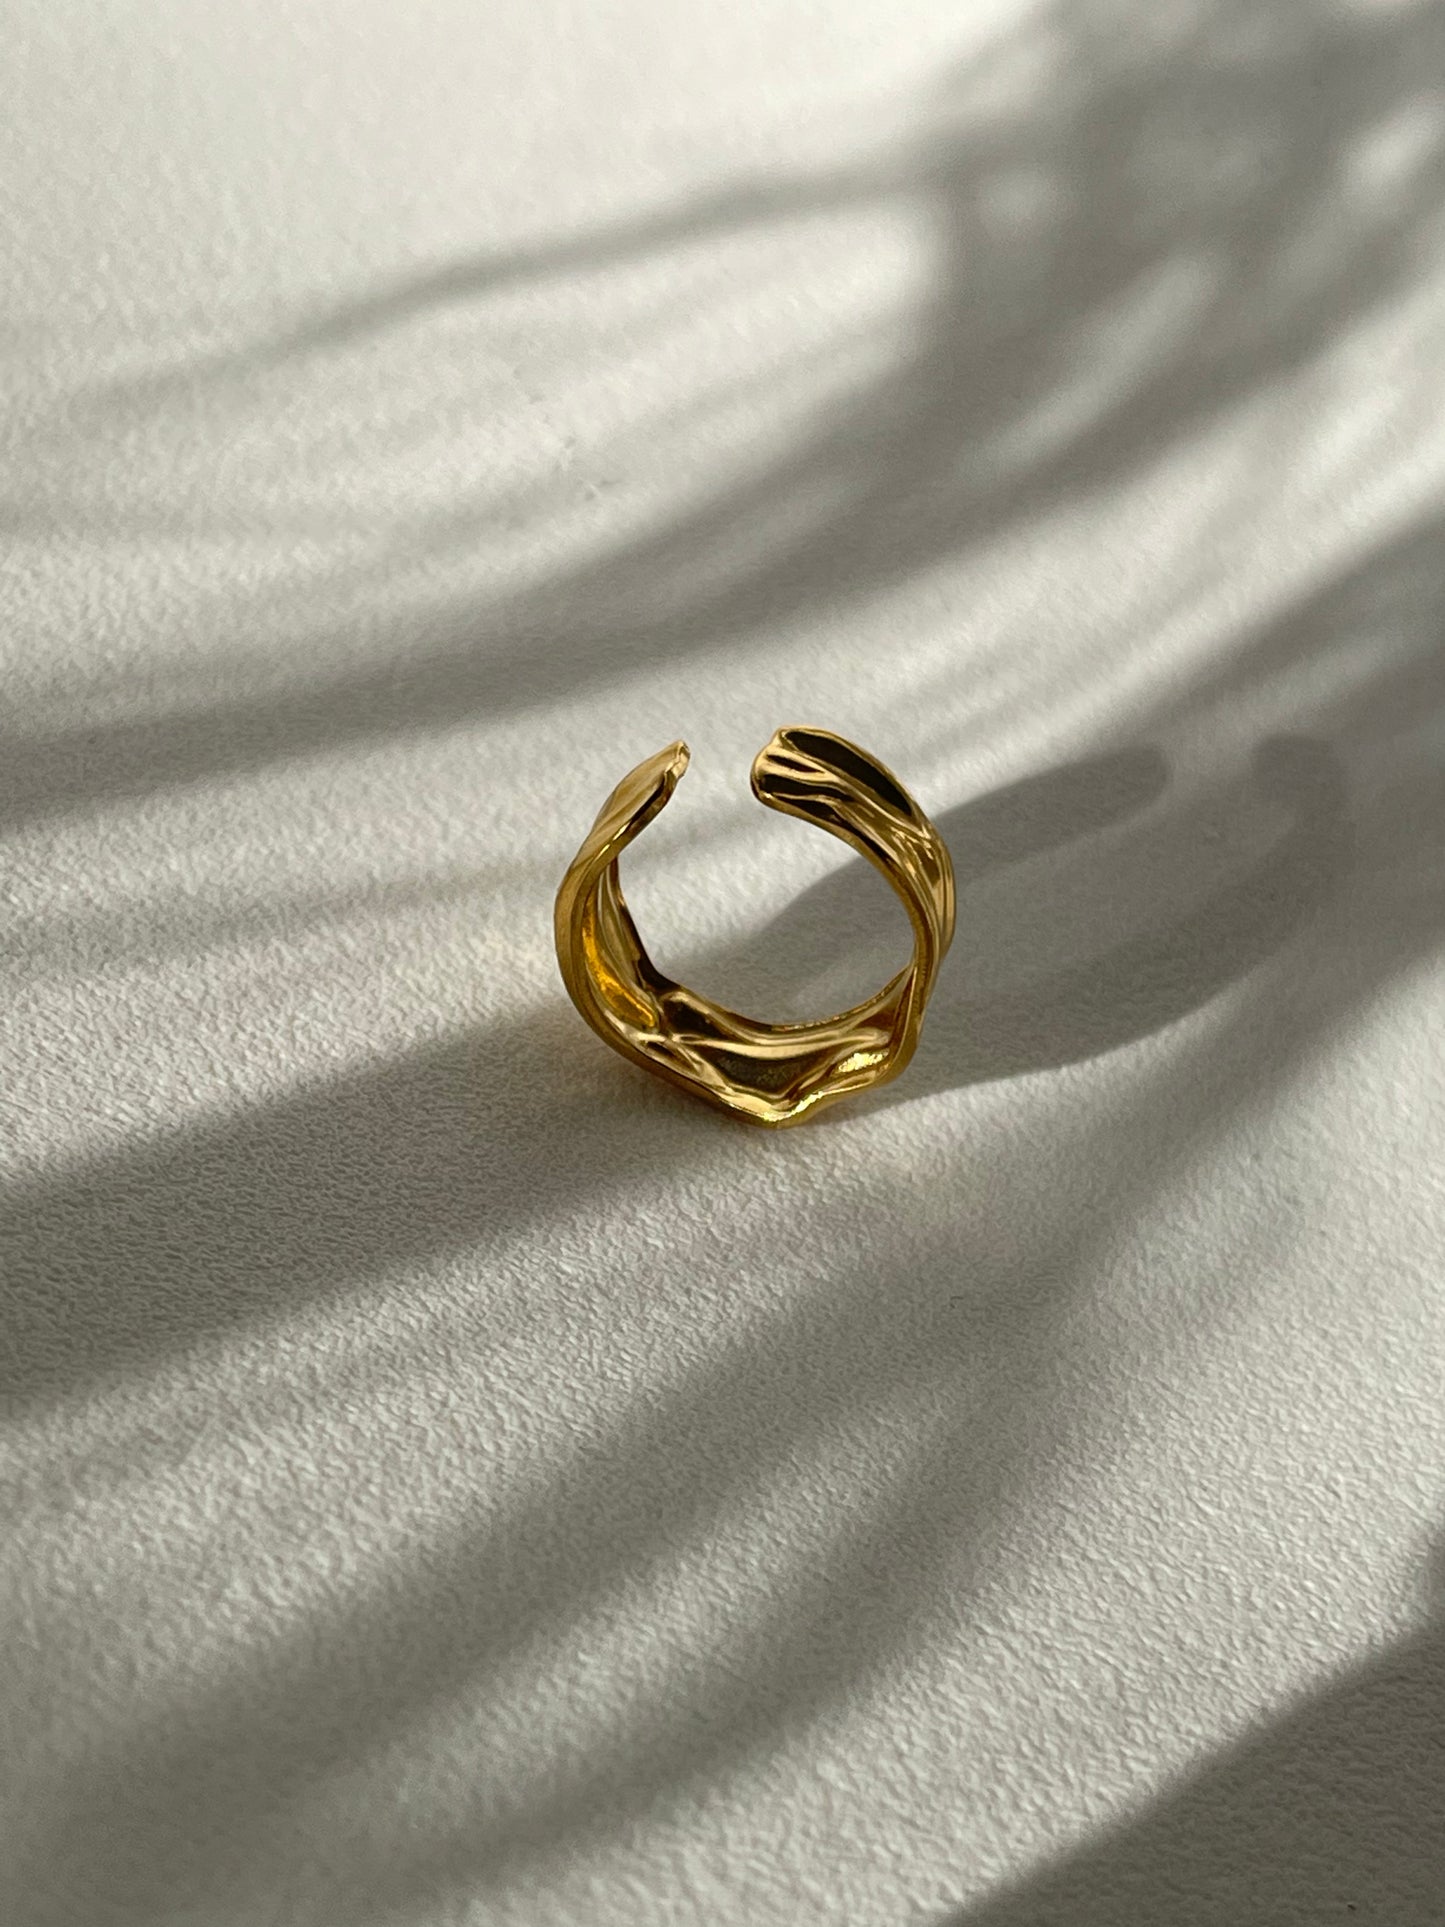 Desert Floor Organic Stainless Steel Ring In 18k Gold Plated